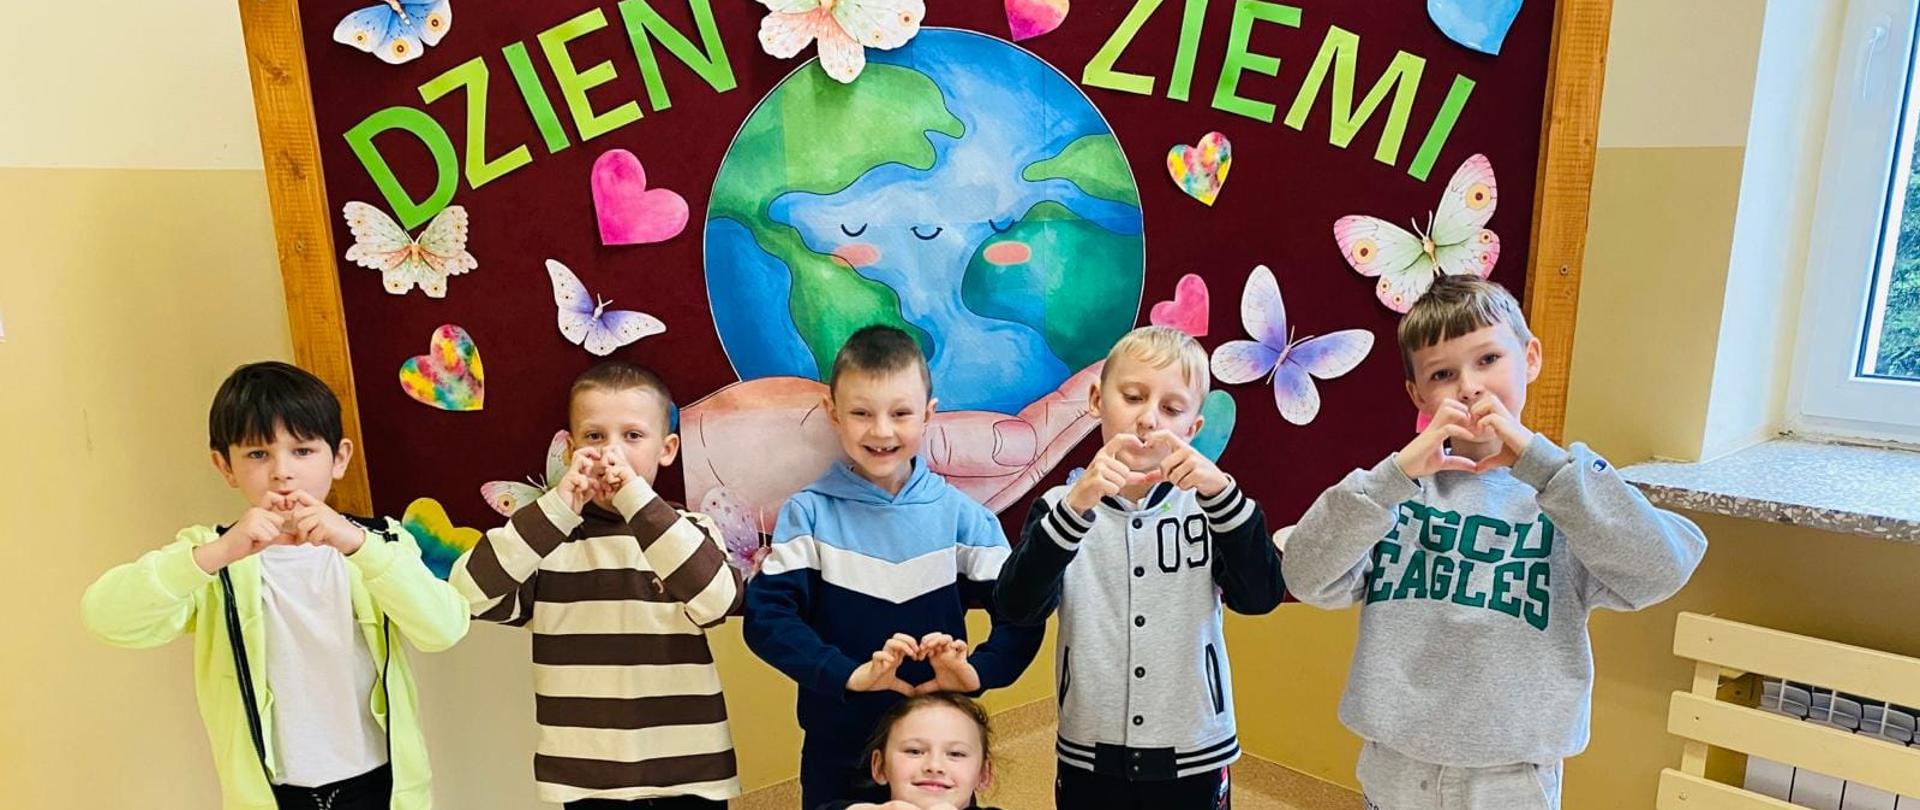 Uczniowie klasy pierwszej czyli czterech chłopców i jedna dziewczynka stoją przed gazetką, na której widnieje napis "Dzień ziemi" i kula ziemska otoczona kwiatami i motylkami. Dzieci pokazują serduszko uformowane z palców dłoni